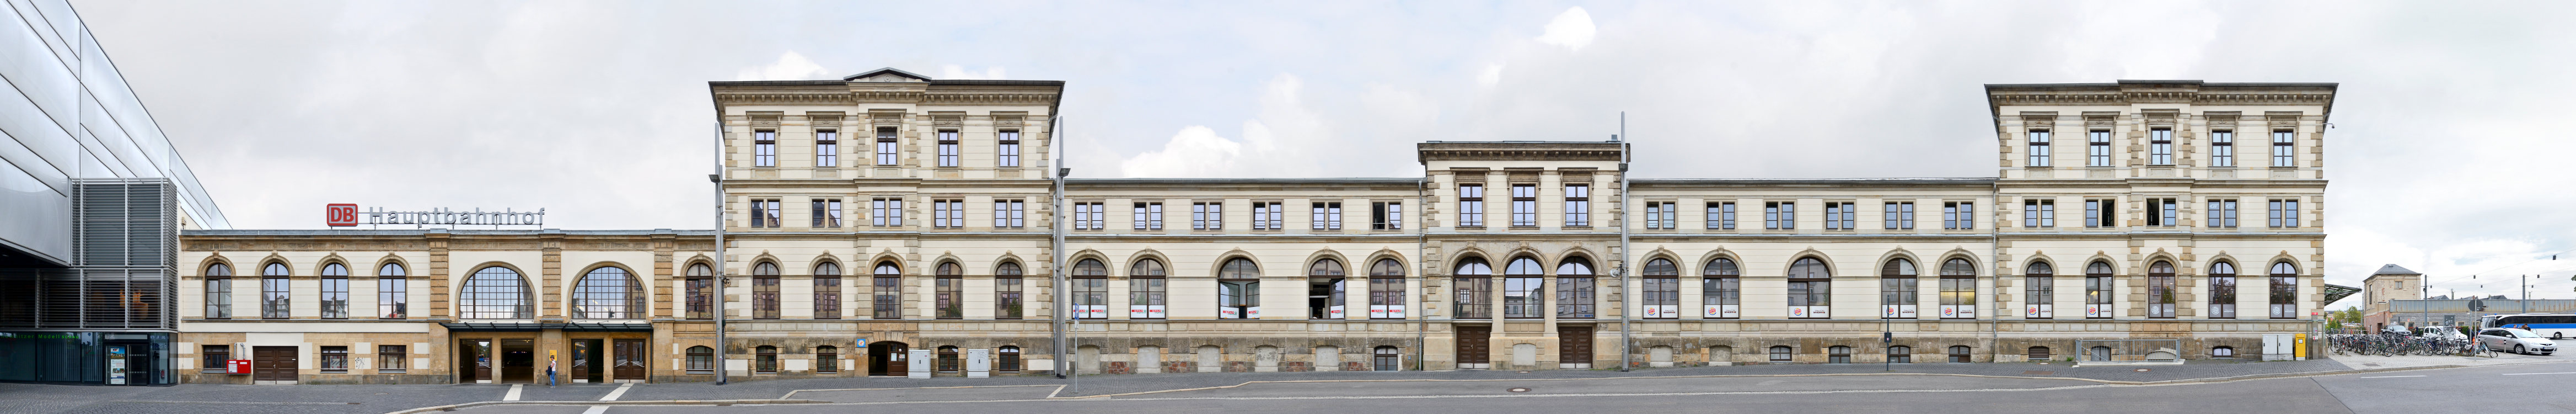 Chemnitz Hauptbahnhof Fassade Architekturfotografie